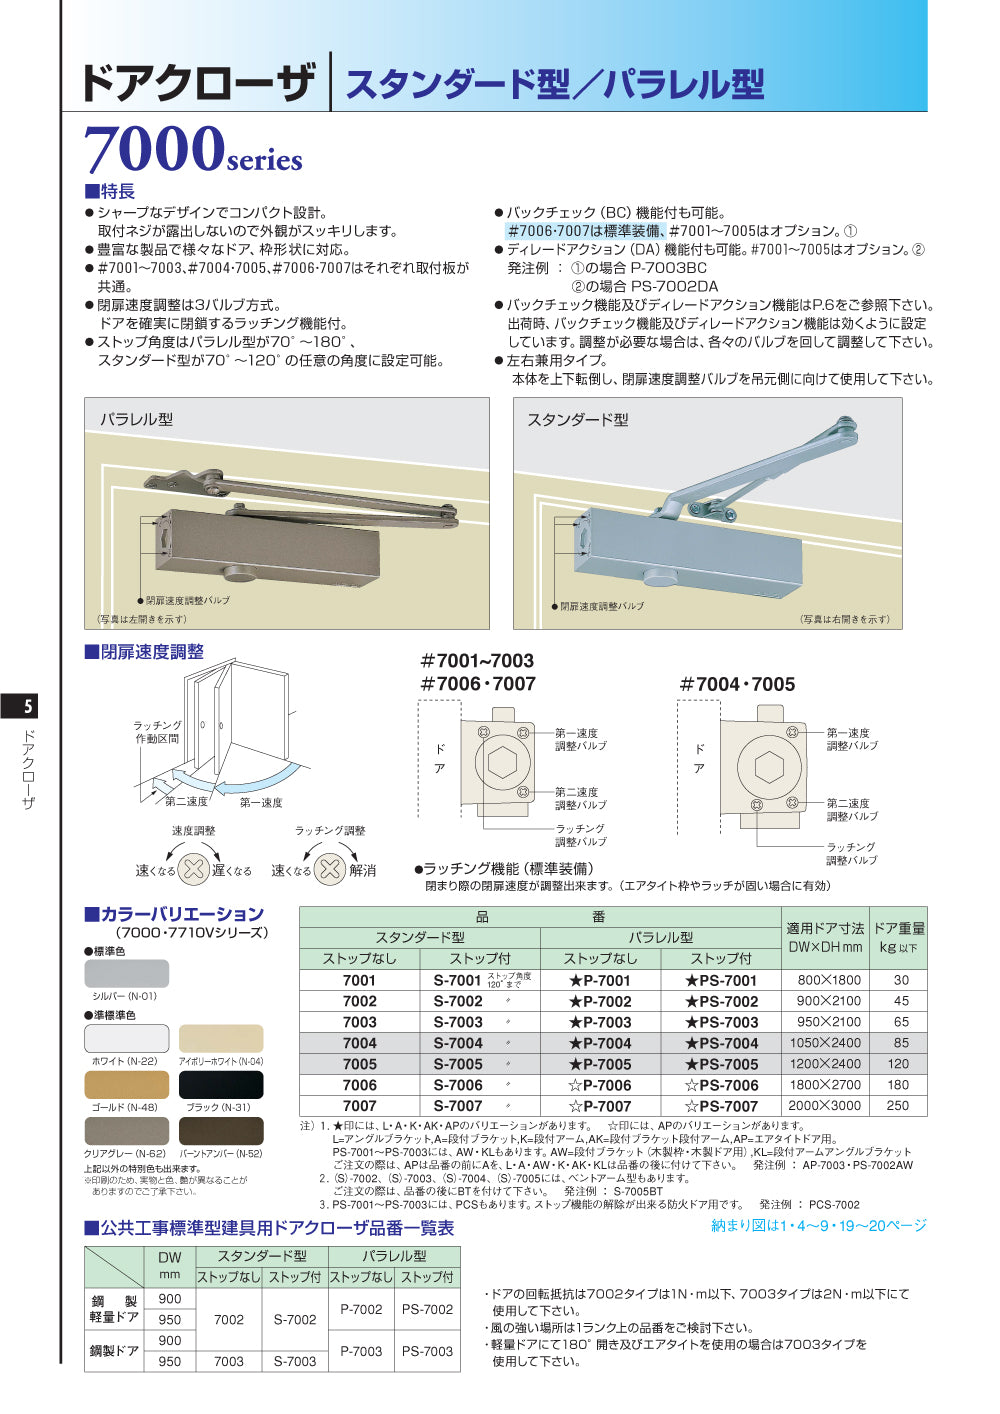 激安価格の ドアチェック ニュースター P-7001 パラレル型 ストップなし ドアクローザー 日本ドアーチェック製造株式会社 